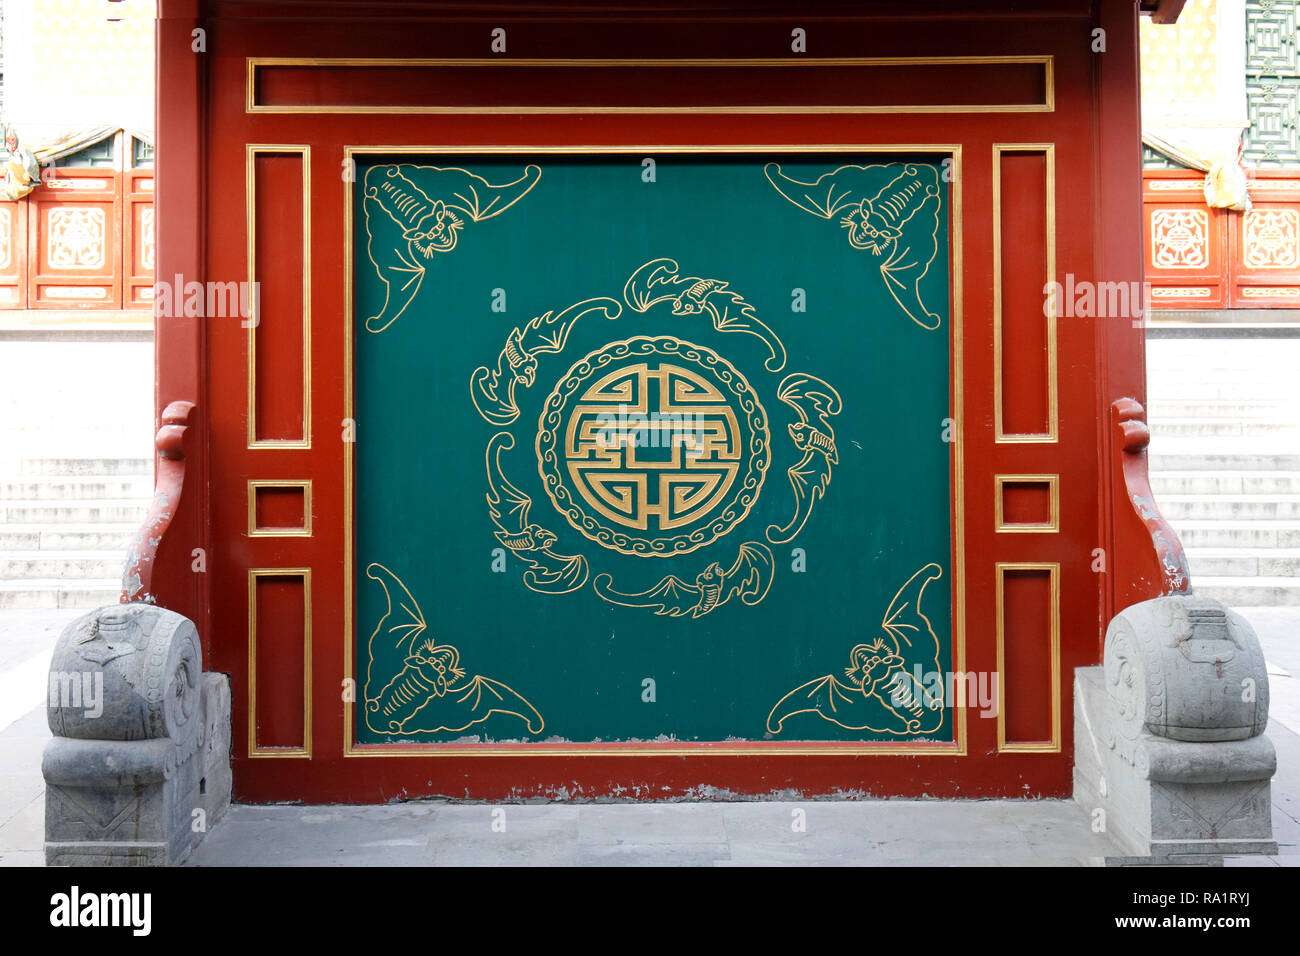 Los chinos Lu Signo, muestra la prosperidad, símbolo usado comúnmente en la cultura china, especialmente en los edificios y en Año Nuevo Foto de stock